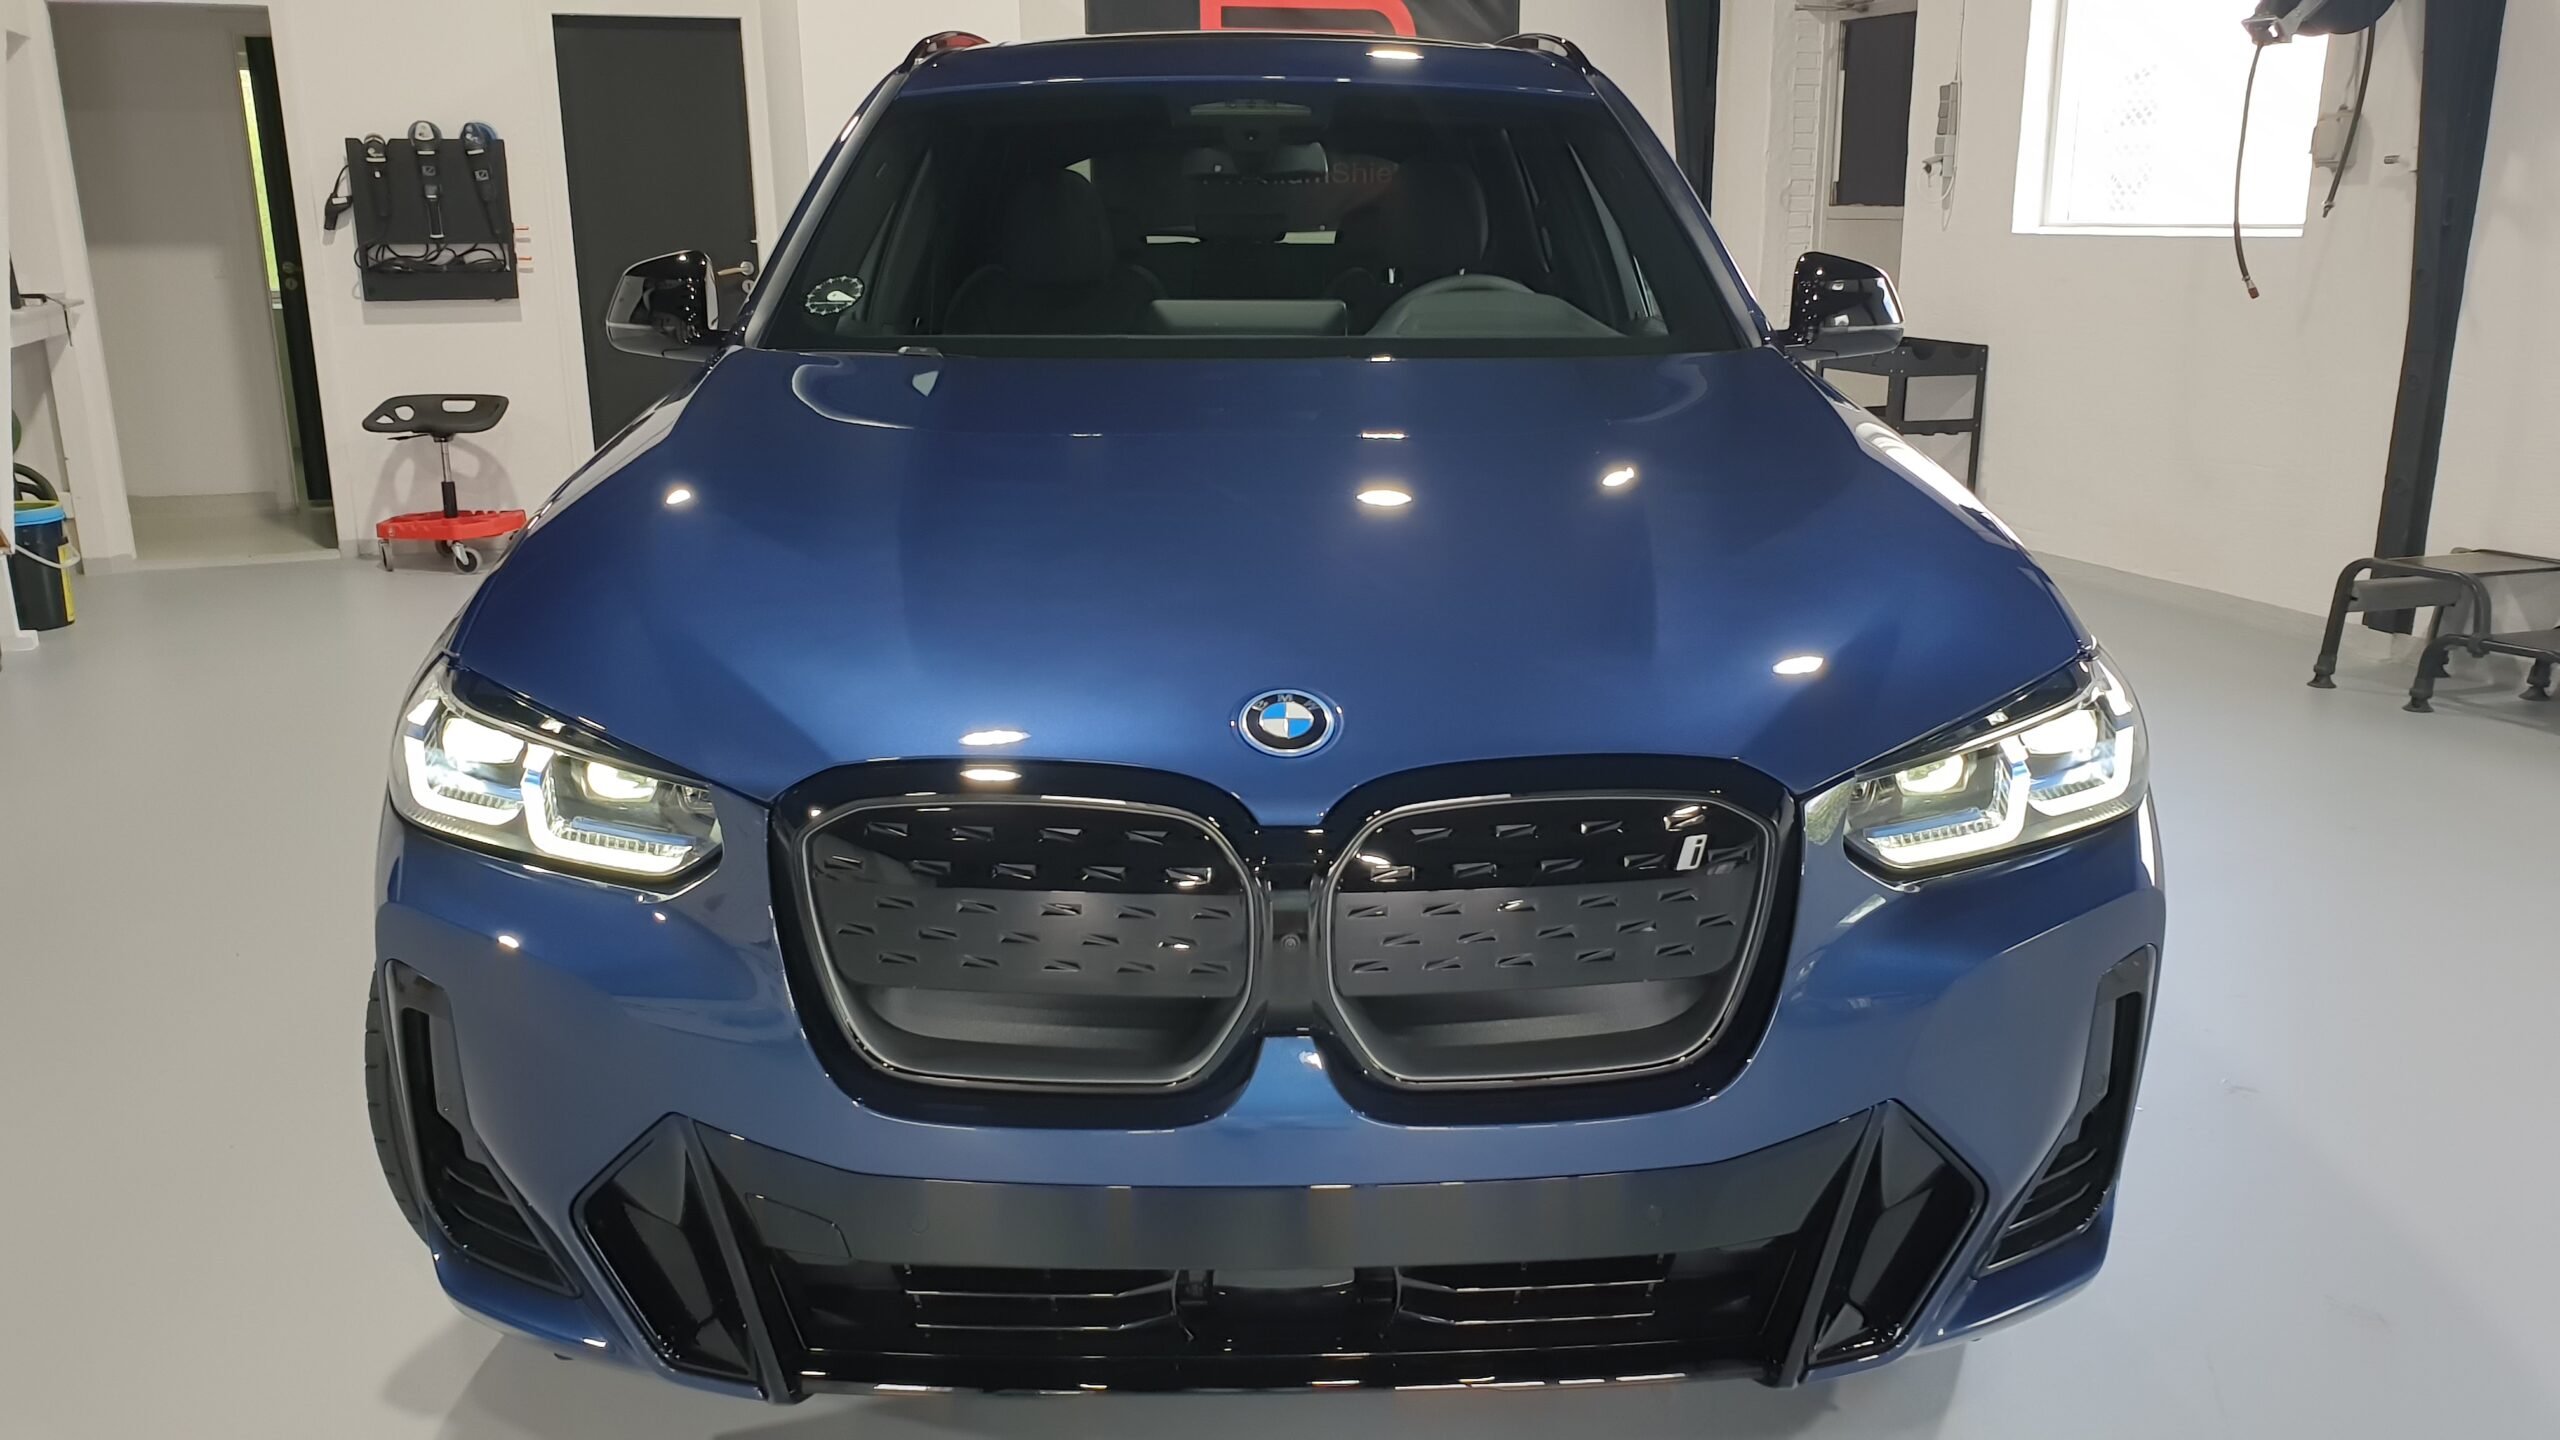 BMW IX3 FACELIFT POLERING, KERAMISK COATING OG PPF ÅRHUS